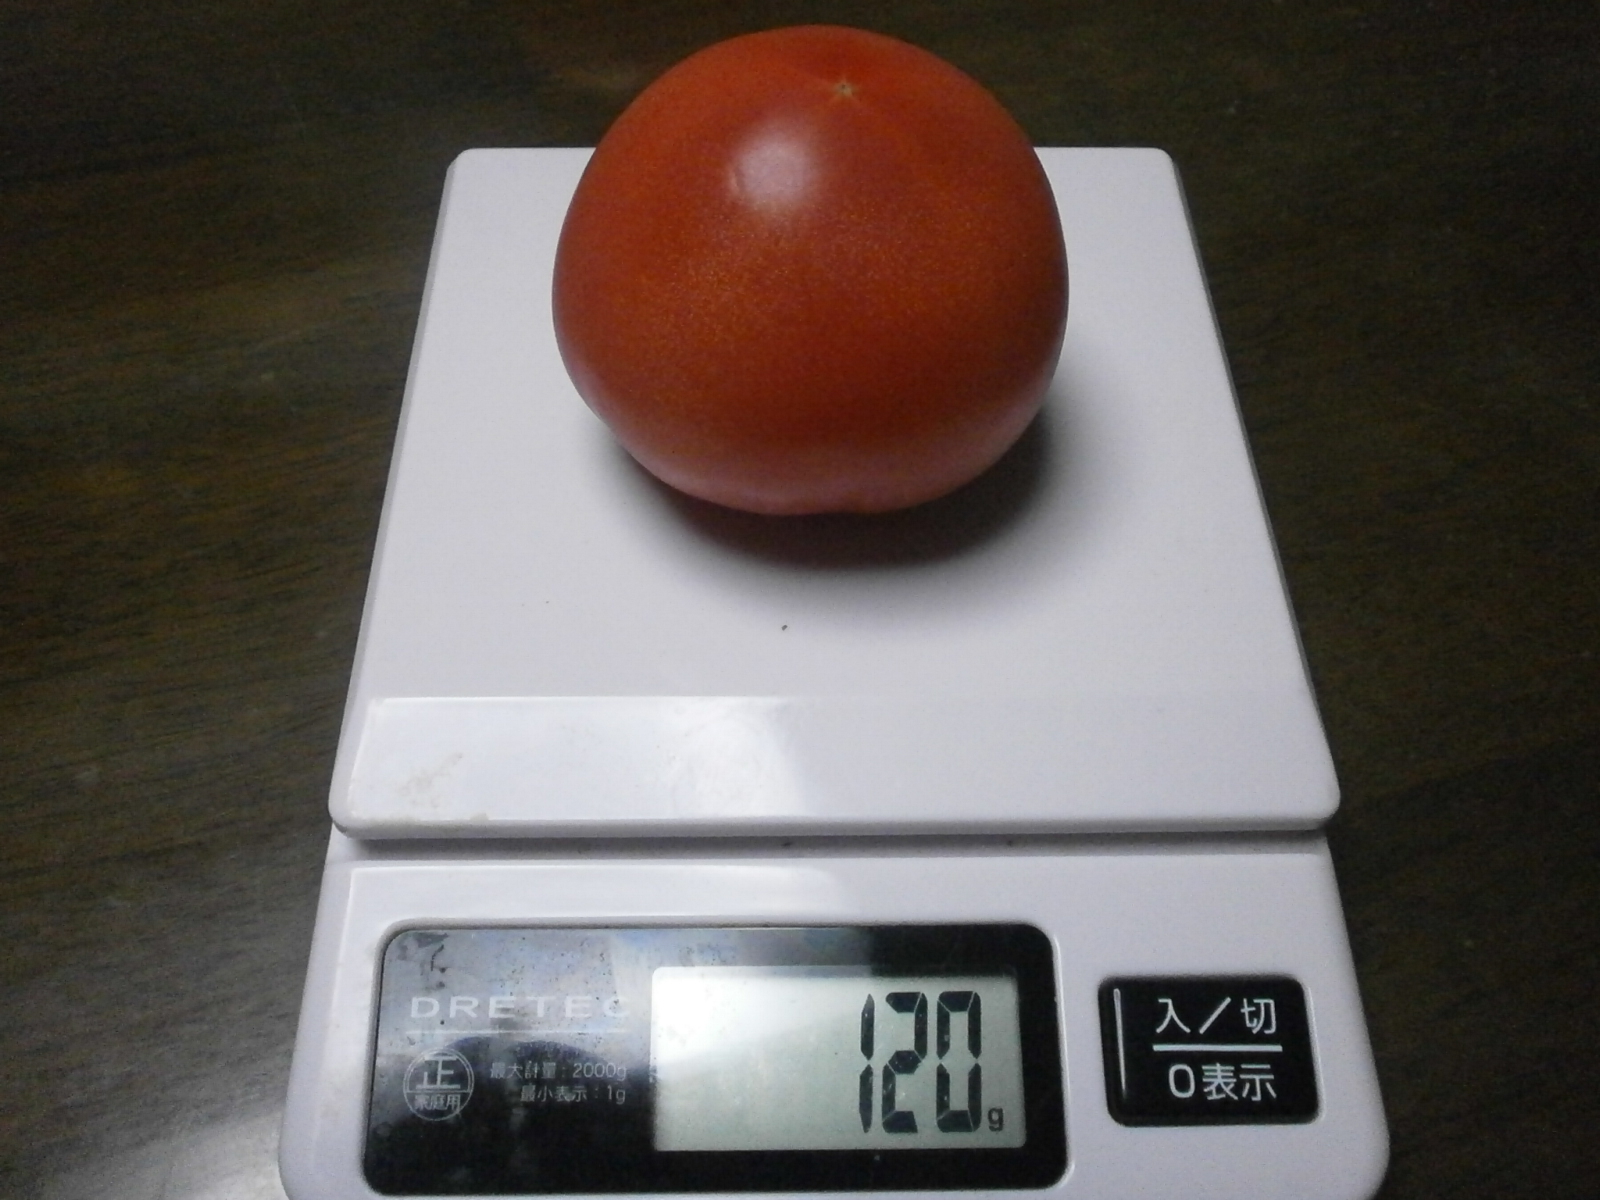 Tomato (141 g/ 136 g/121 g / 120 g)